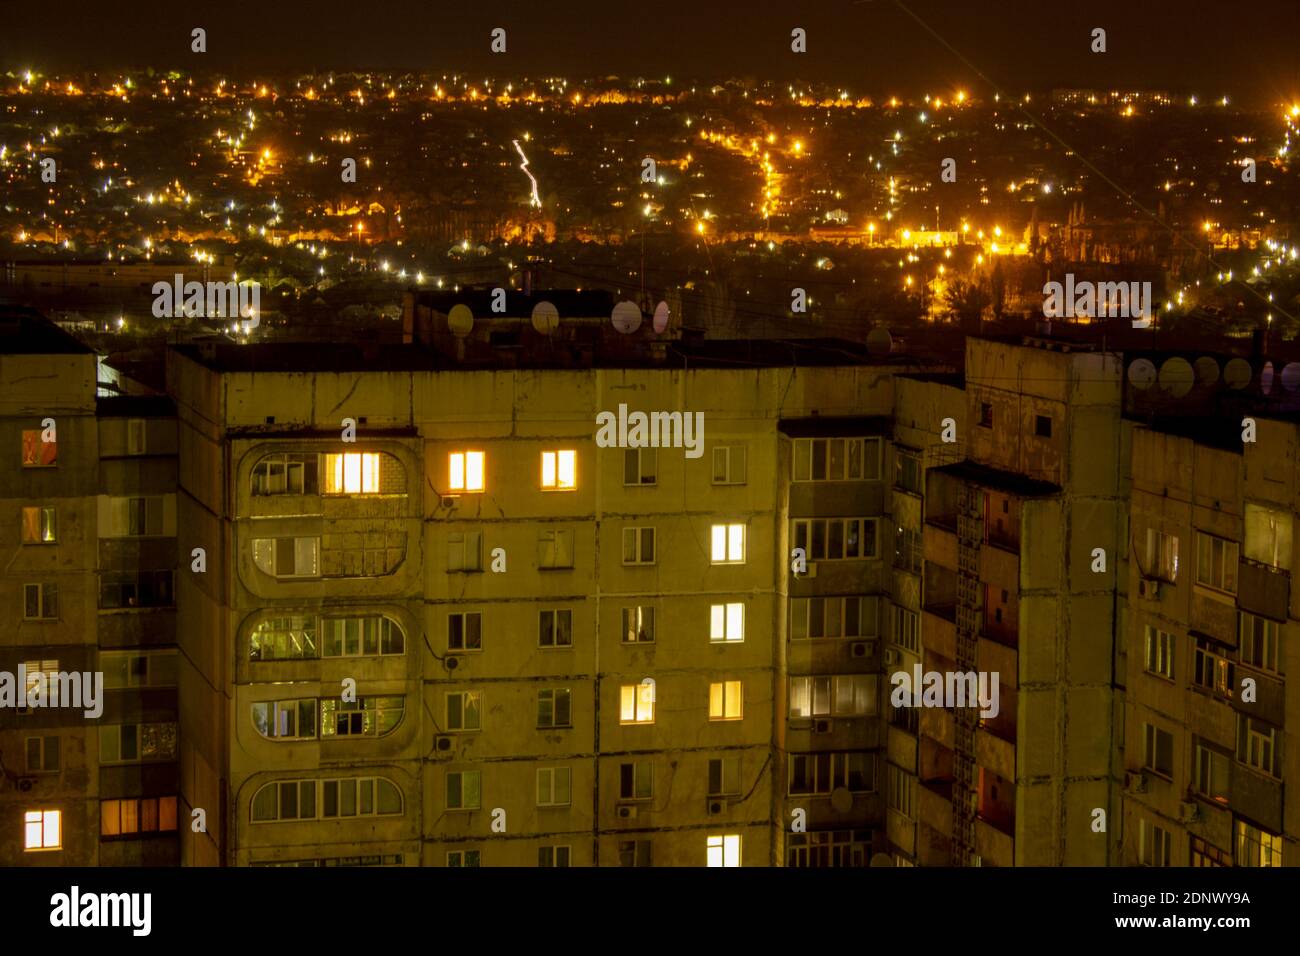 Immeubles d'appartements, ville de nuit, quarantaine de toutes les maisons. Photo de haute qualité Banque D'Images